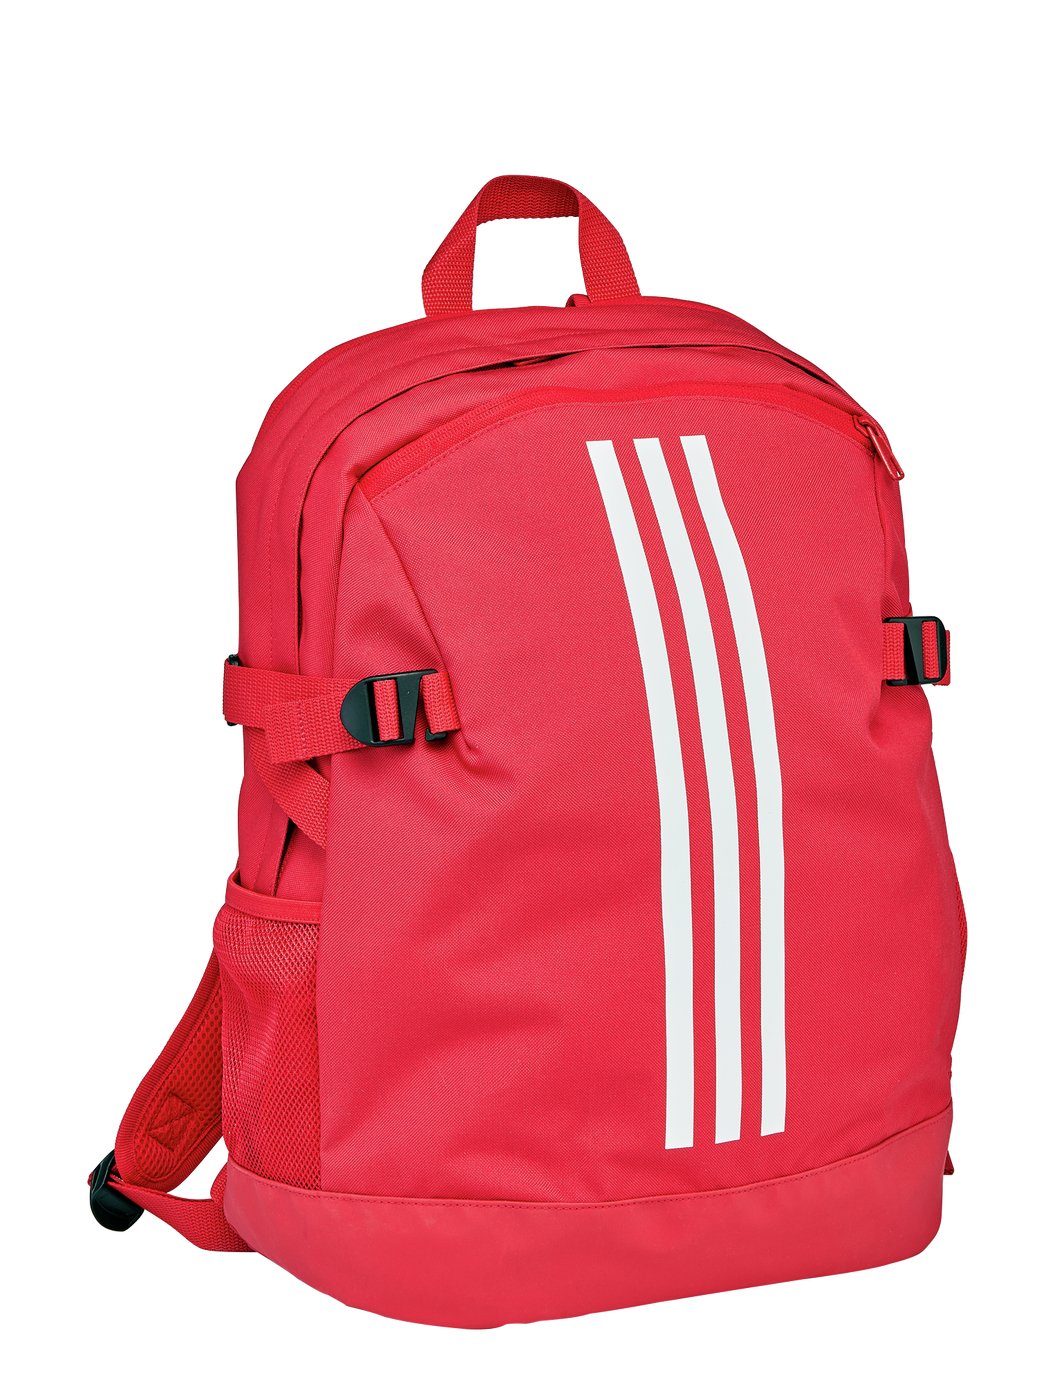 'Adidas Powerplus Backpack - Pink